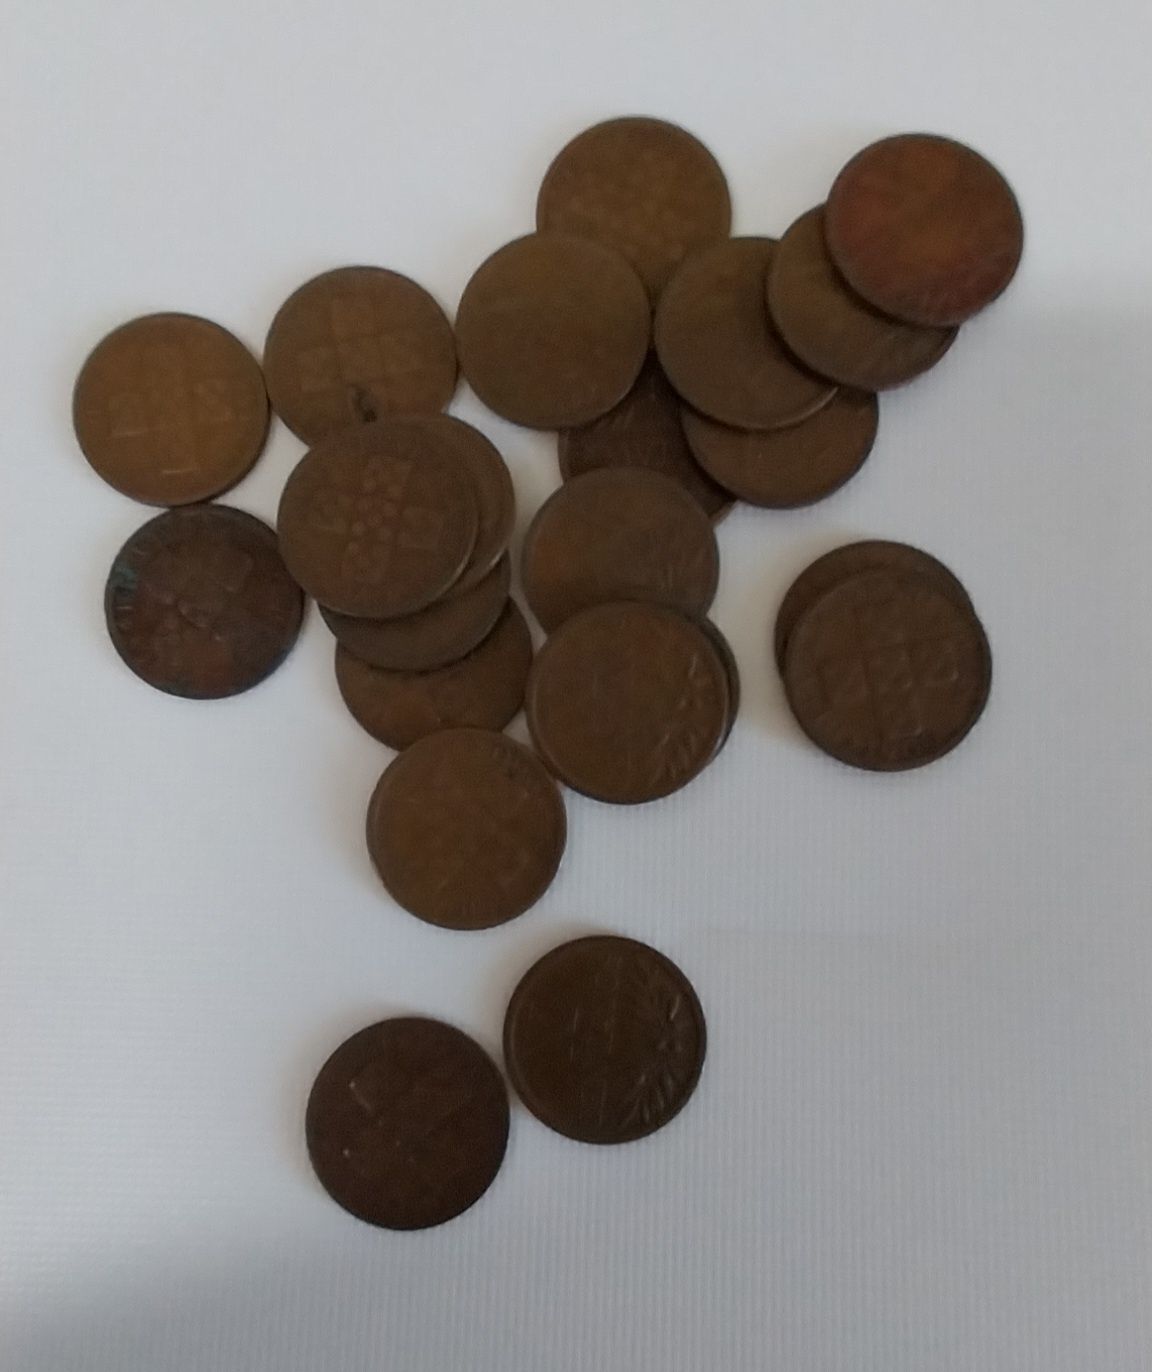 Lote de 22 moedas de x centavos de 1960